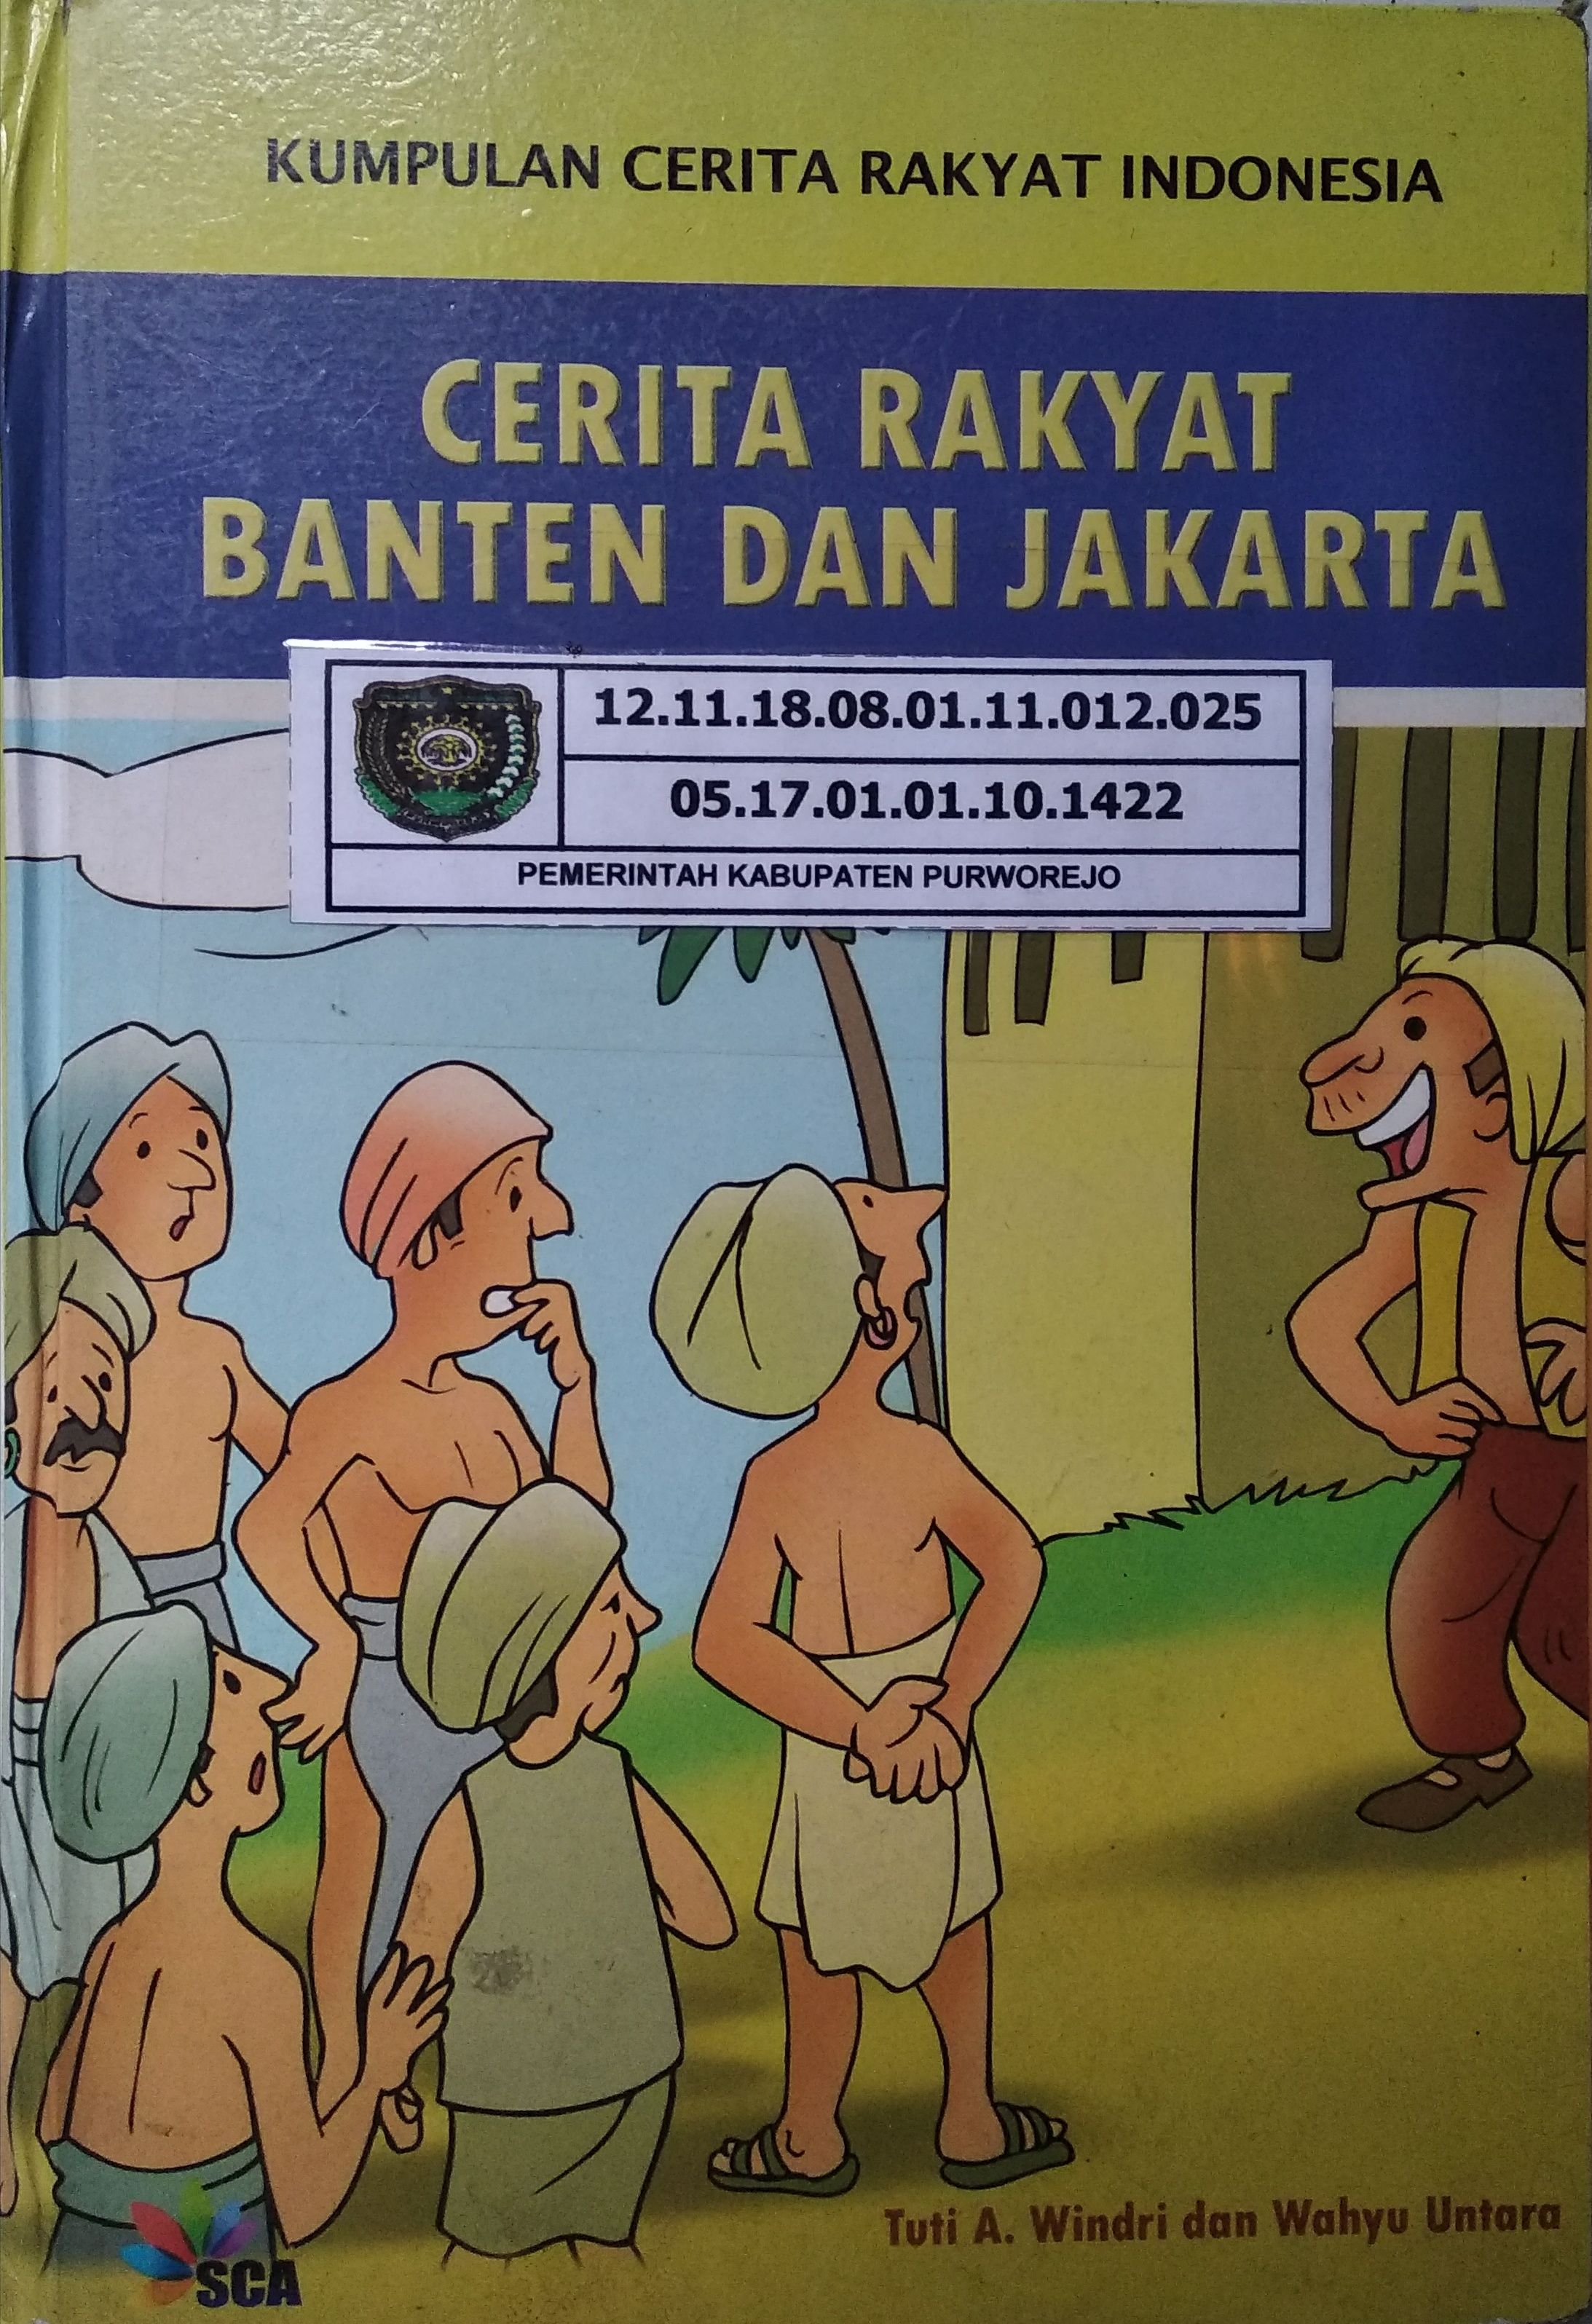 Resensi Buku "Cerita Rakyat Banten dan Jakarta" oleh Sinta sukmadewi Halaman all Kompasiana